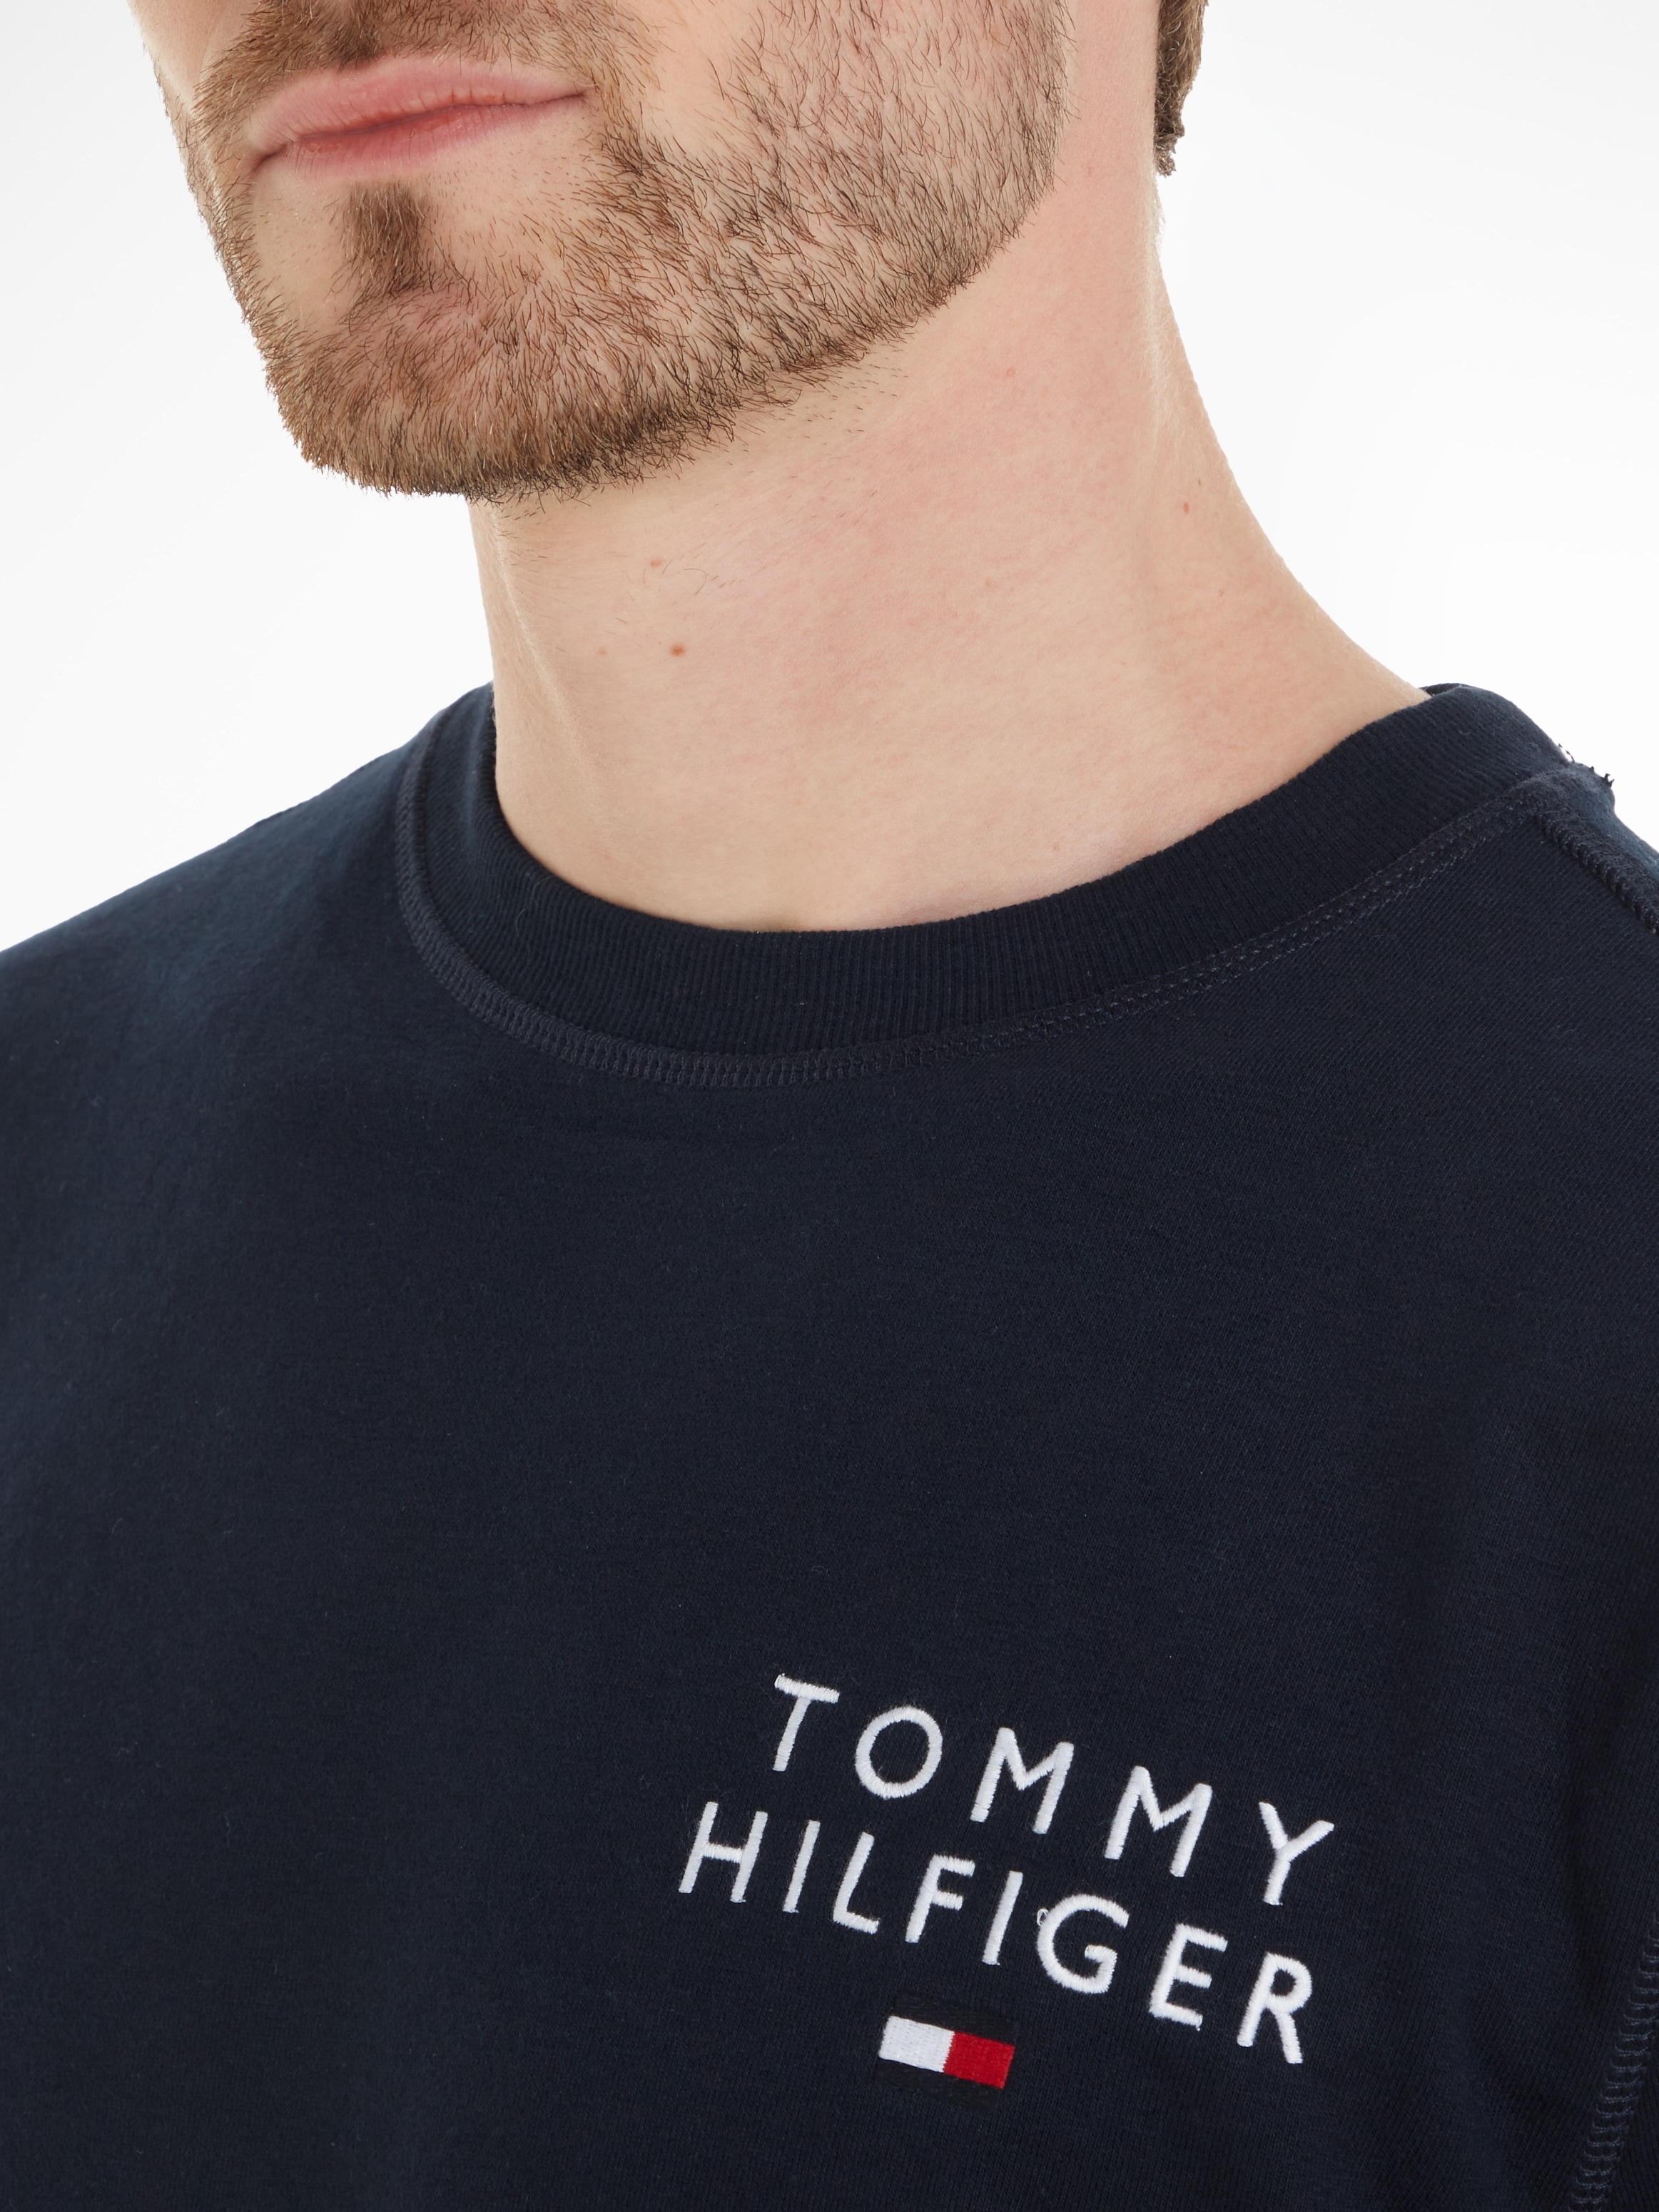 Tommy Hilfiger Underwear Sweatshirt »TRACK TOP HWK«, mit Tommy Hilfiger Markenlabel